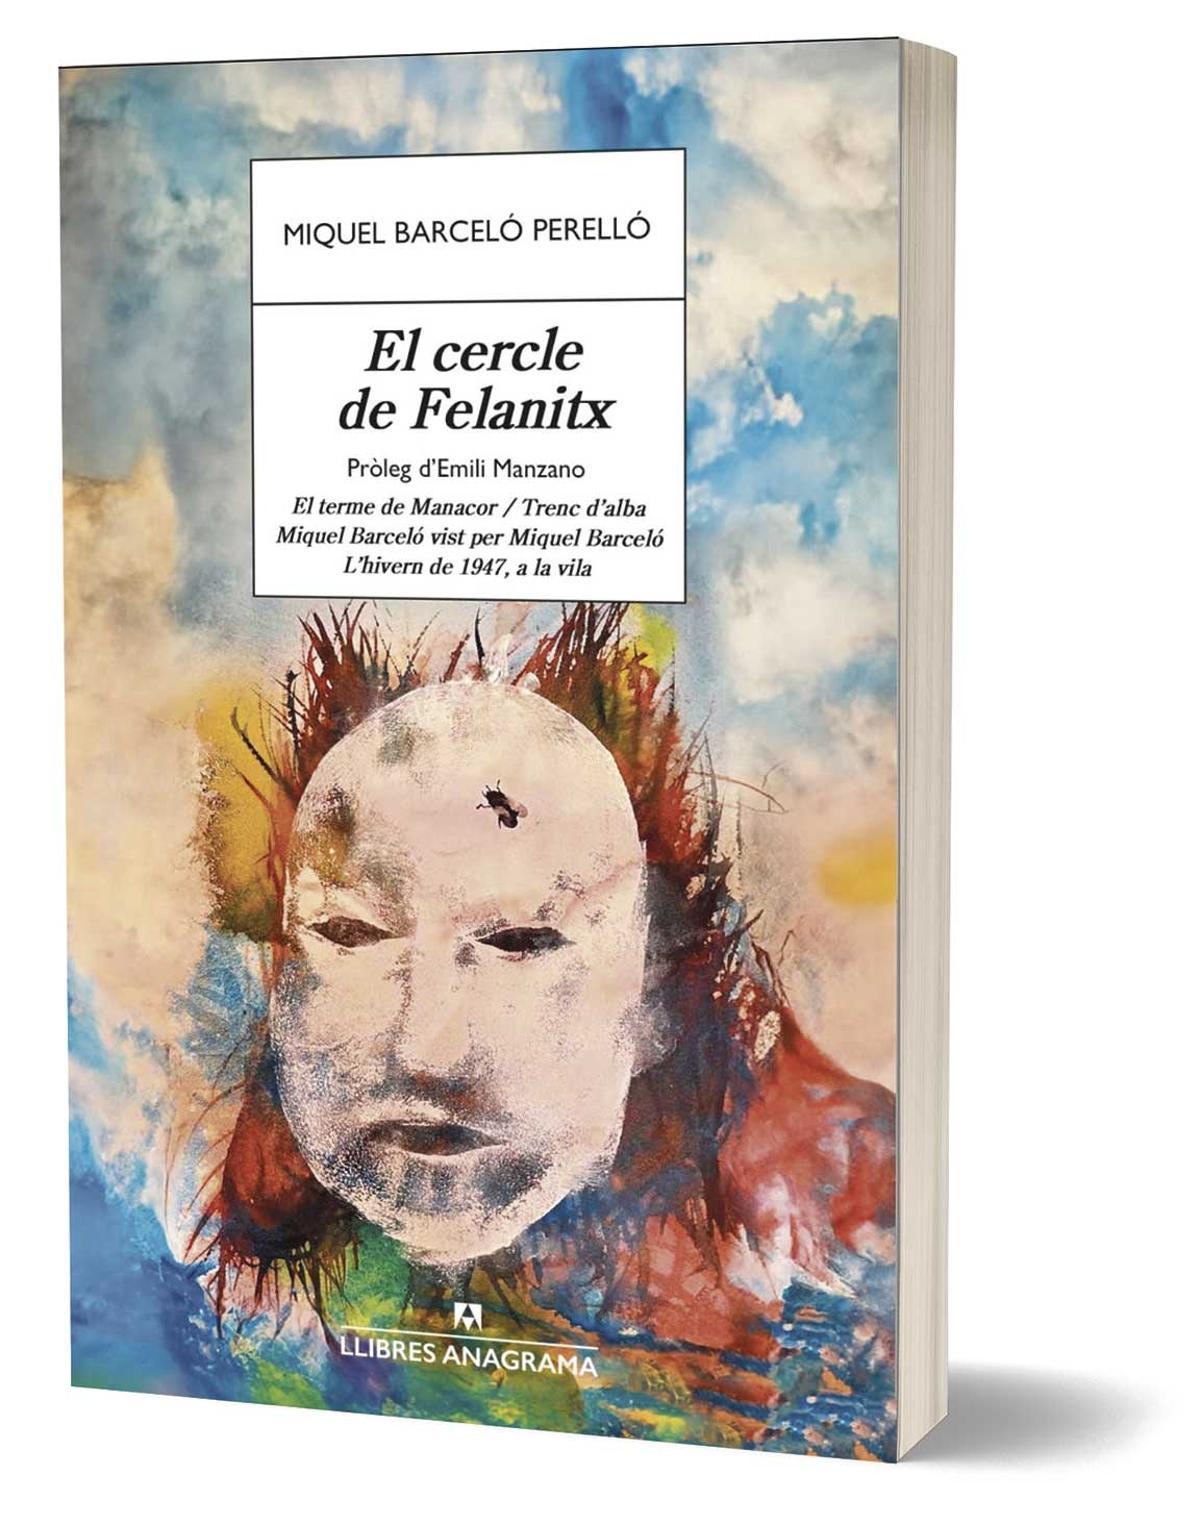 Portada del libro 'El cercle de Felanitx ' de Miquel Barceló Perelló.